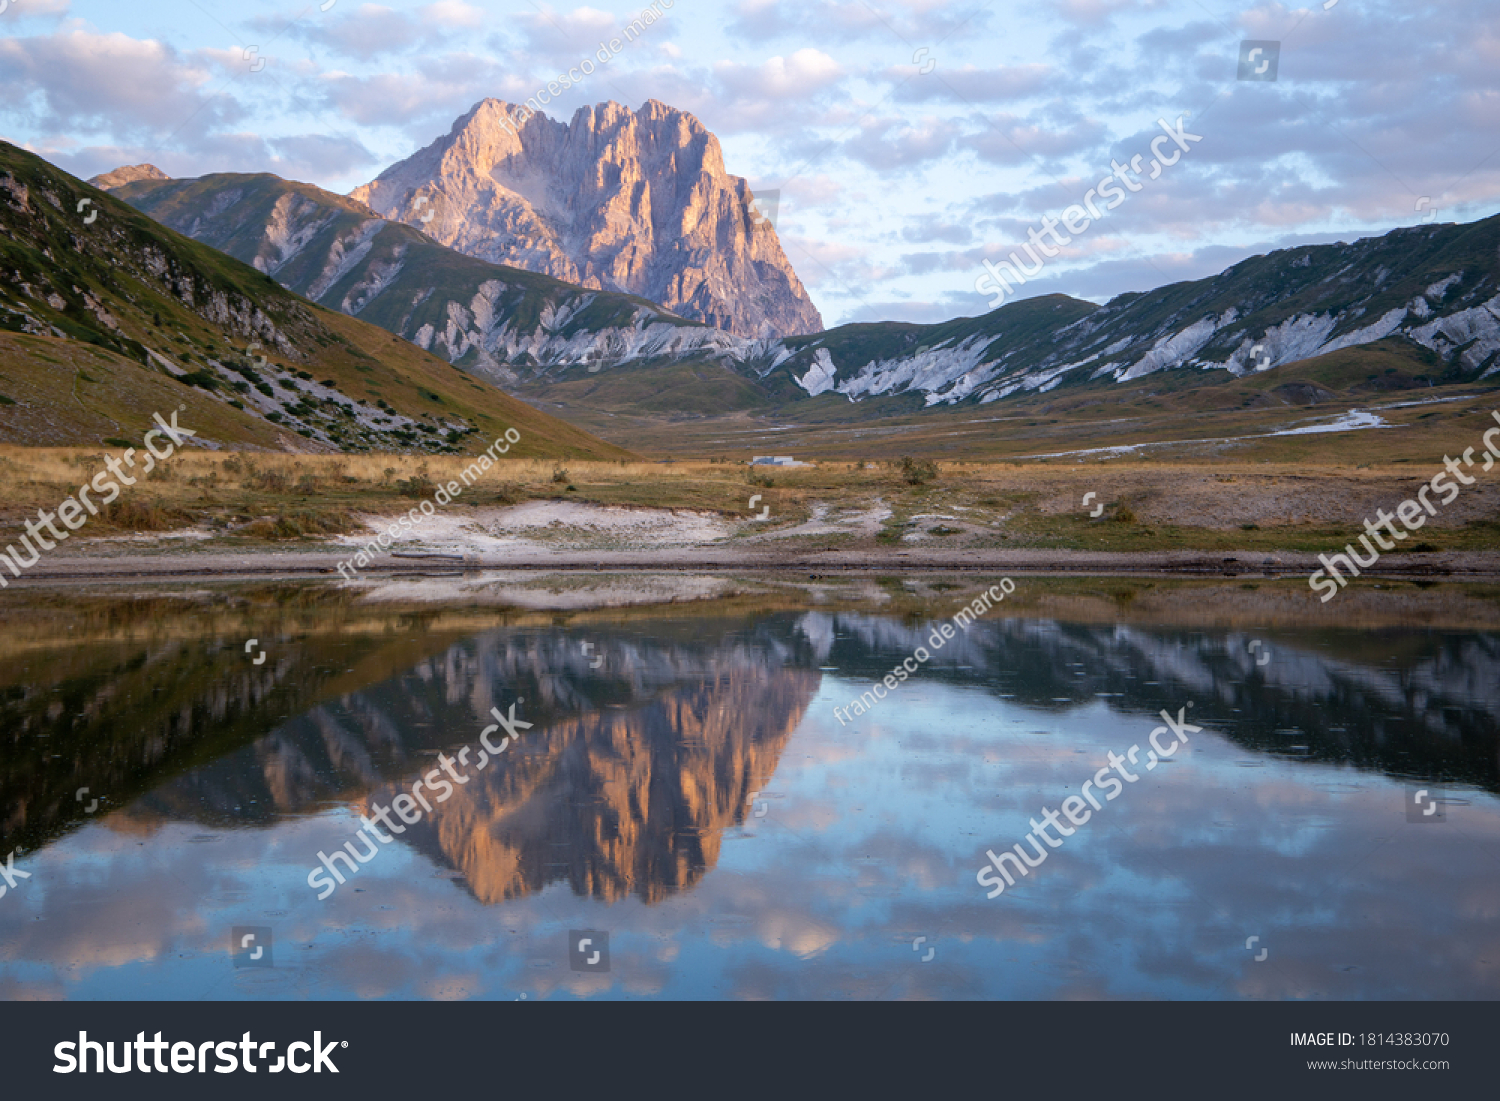 Campo Imperatore and the Gran Sasso massif Gran Sasso National Park Abruzzo Italy #1814383070